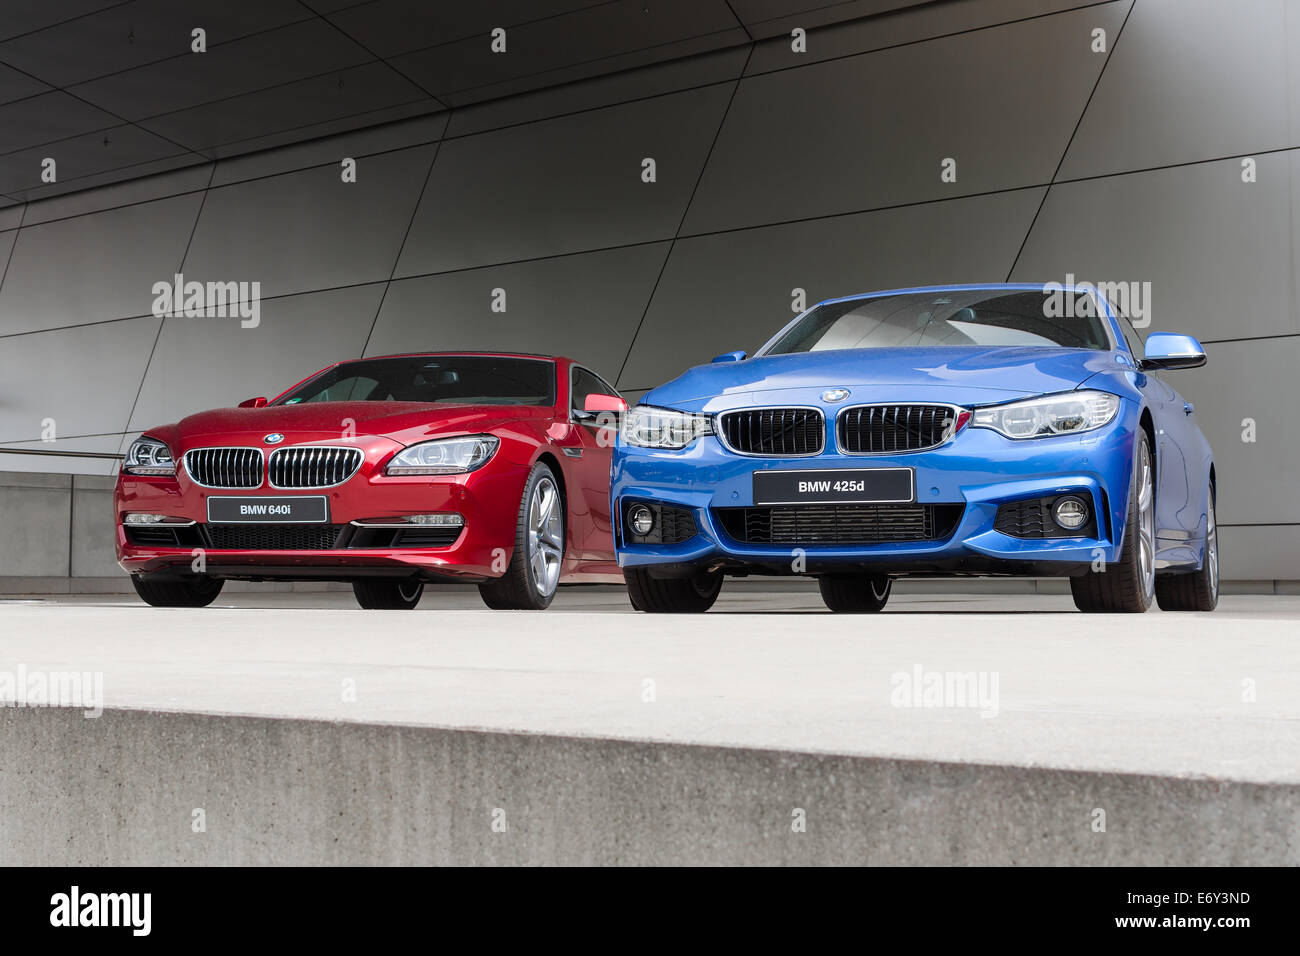 Monaco di Baviera, Germania - Agosto 9, 2014: Nuovi modelli moderni di executive business class automobili BMW. Red 640i e blu 425d bagnate dopo la pioggia Foto Stock